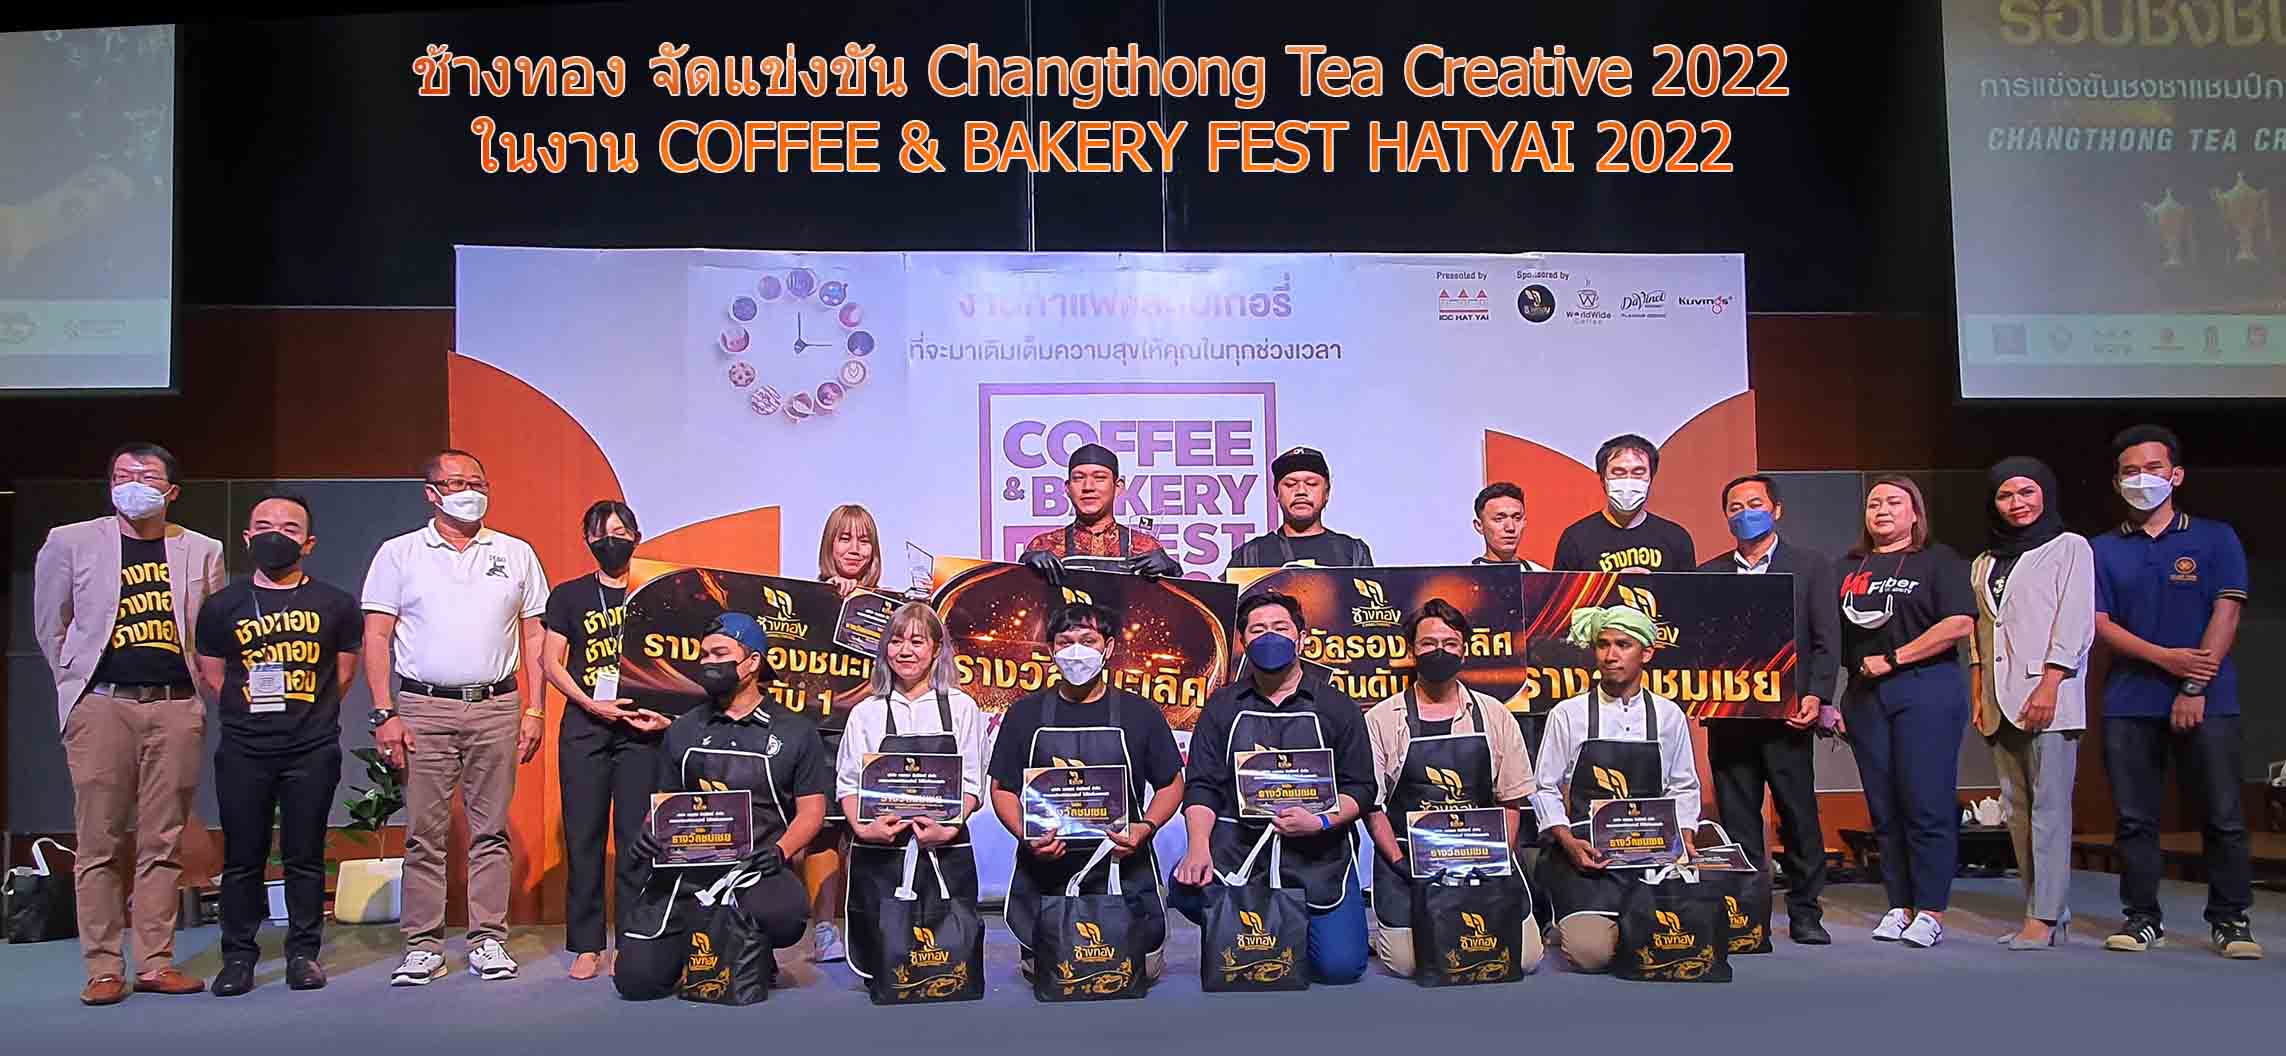 “ช้างทอง” จัดแข่งขัน Changthong Tea Creative 2022 ในงาน “COFFEE & BAKERY FEST HATYAI 2022”